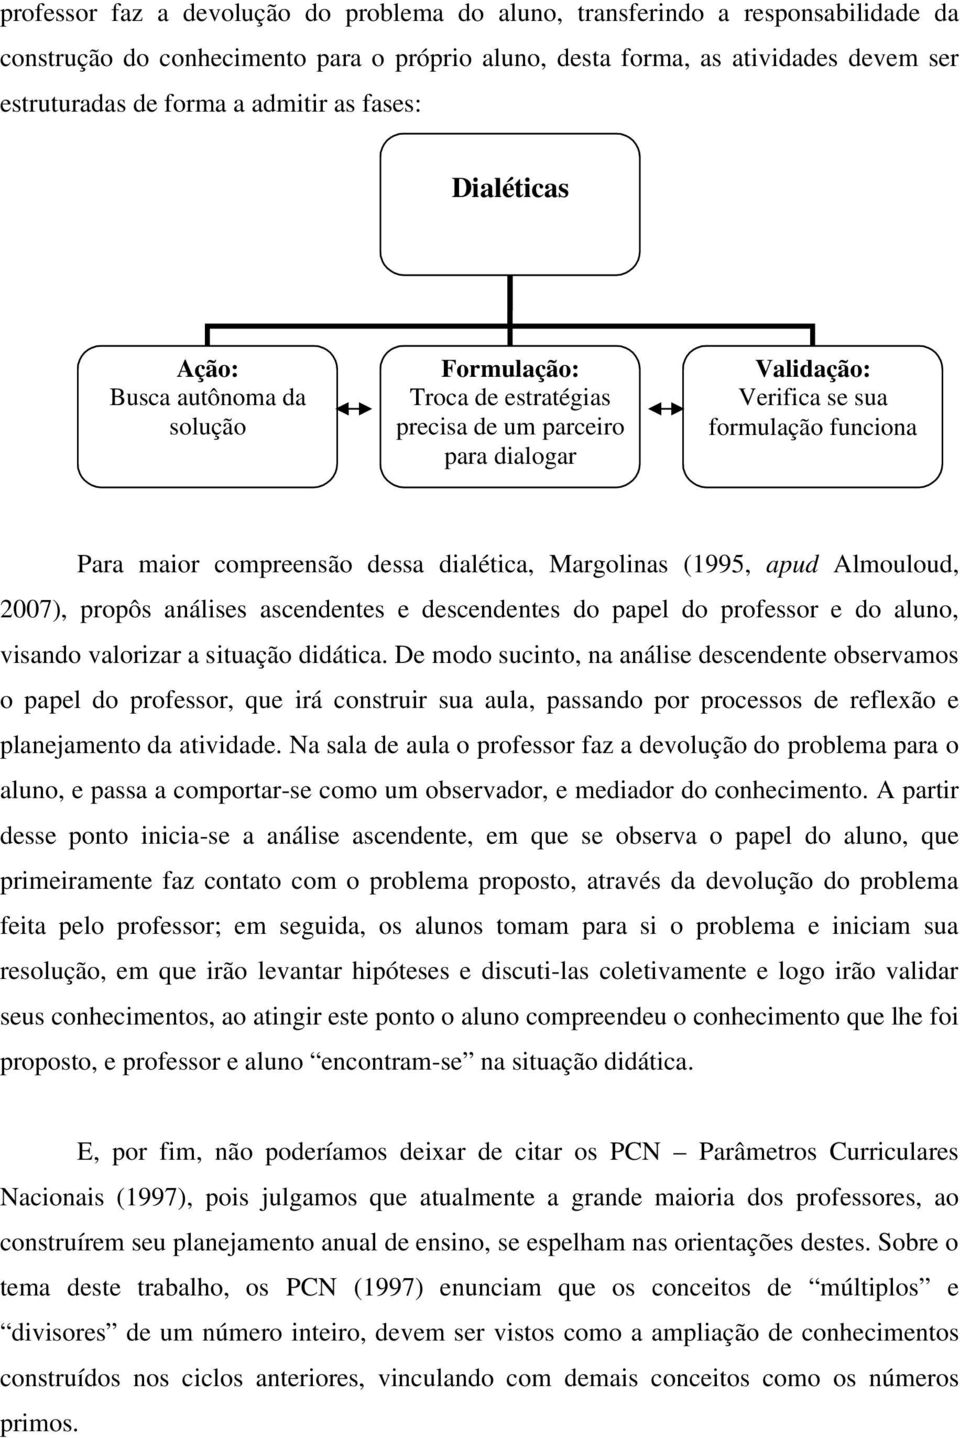 compreensão dessa dialética, Margolinas (1995, apud Almouloud, 2007), propôs análises ascendentes e descendentes do papel do professor e do aluno, visando valorizar a situação didática.